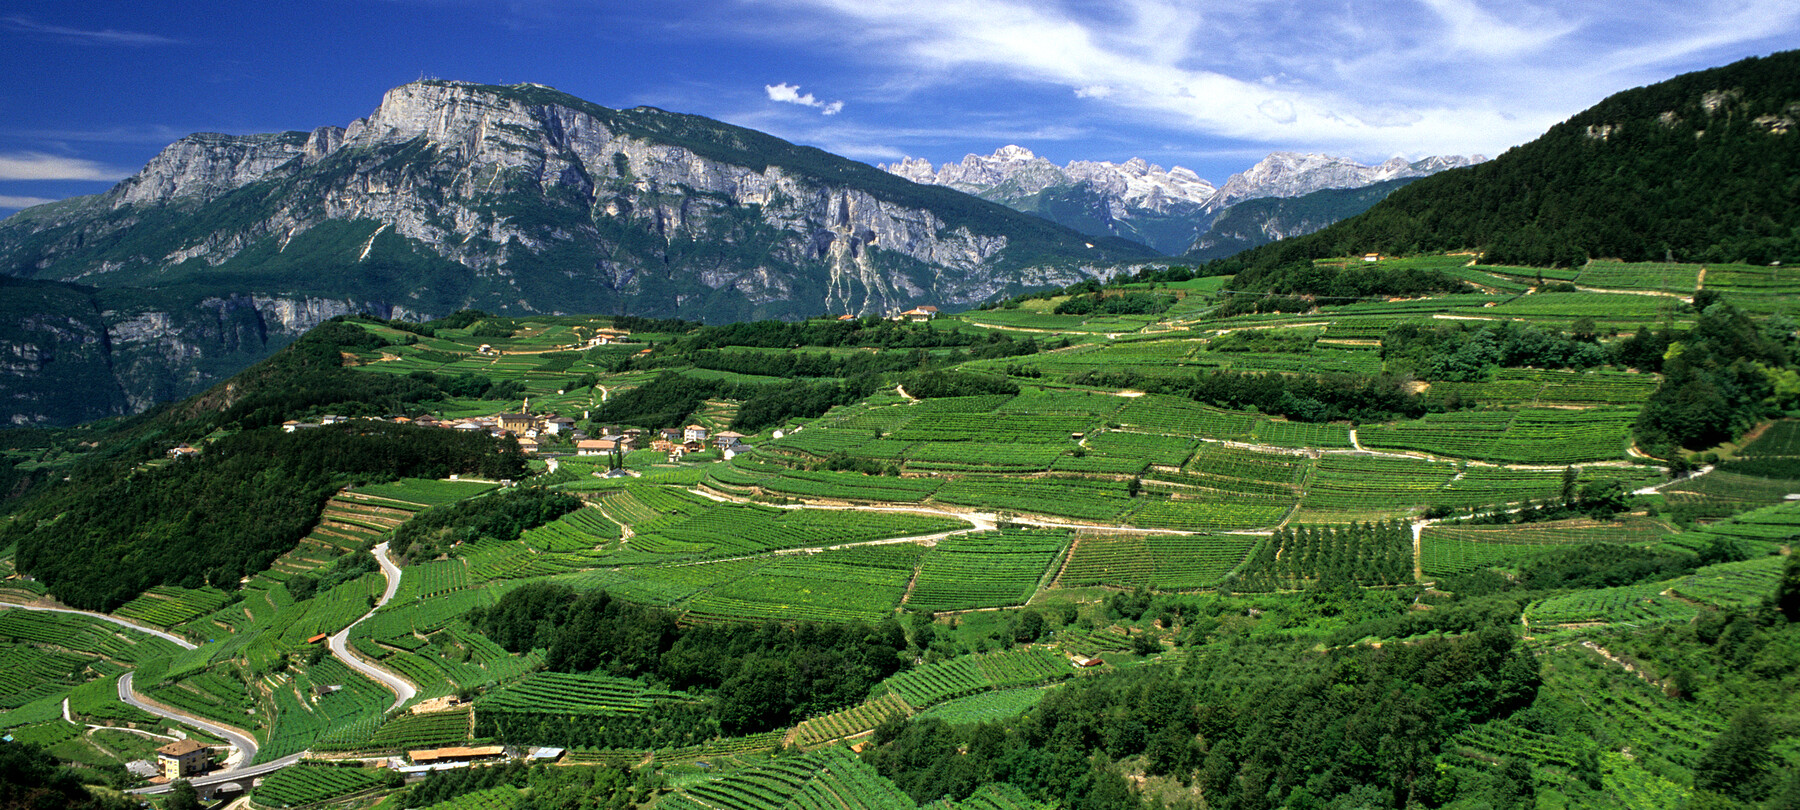 Ausgezeichnete Weine aus dem Trentino